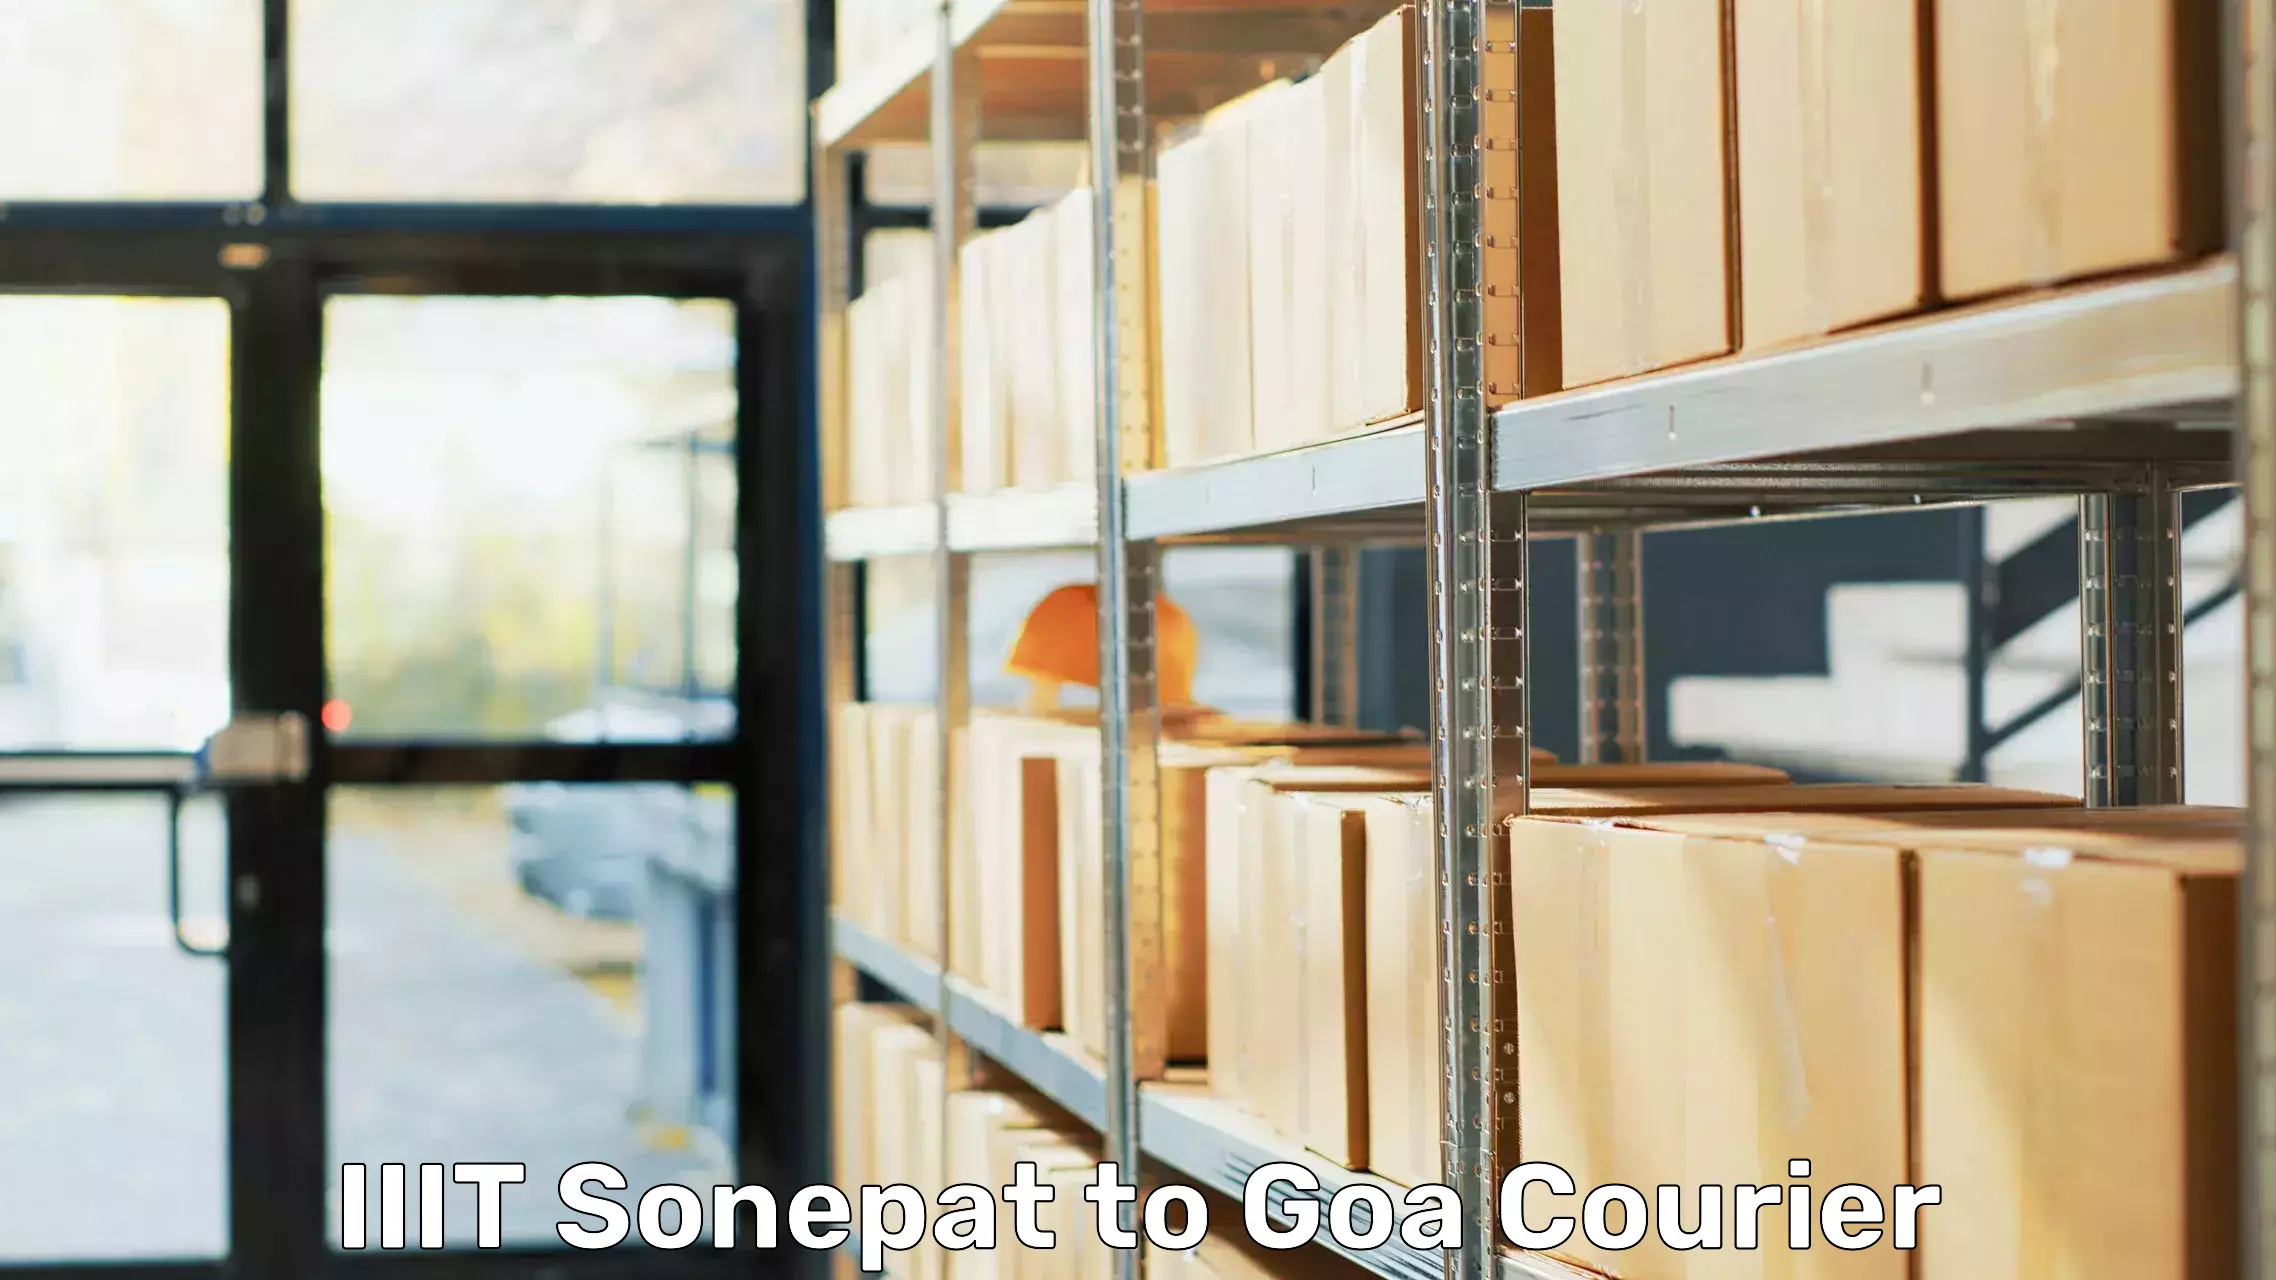 Efficient furniture relocation IIIT Sonepat to Goa